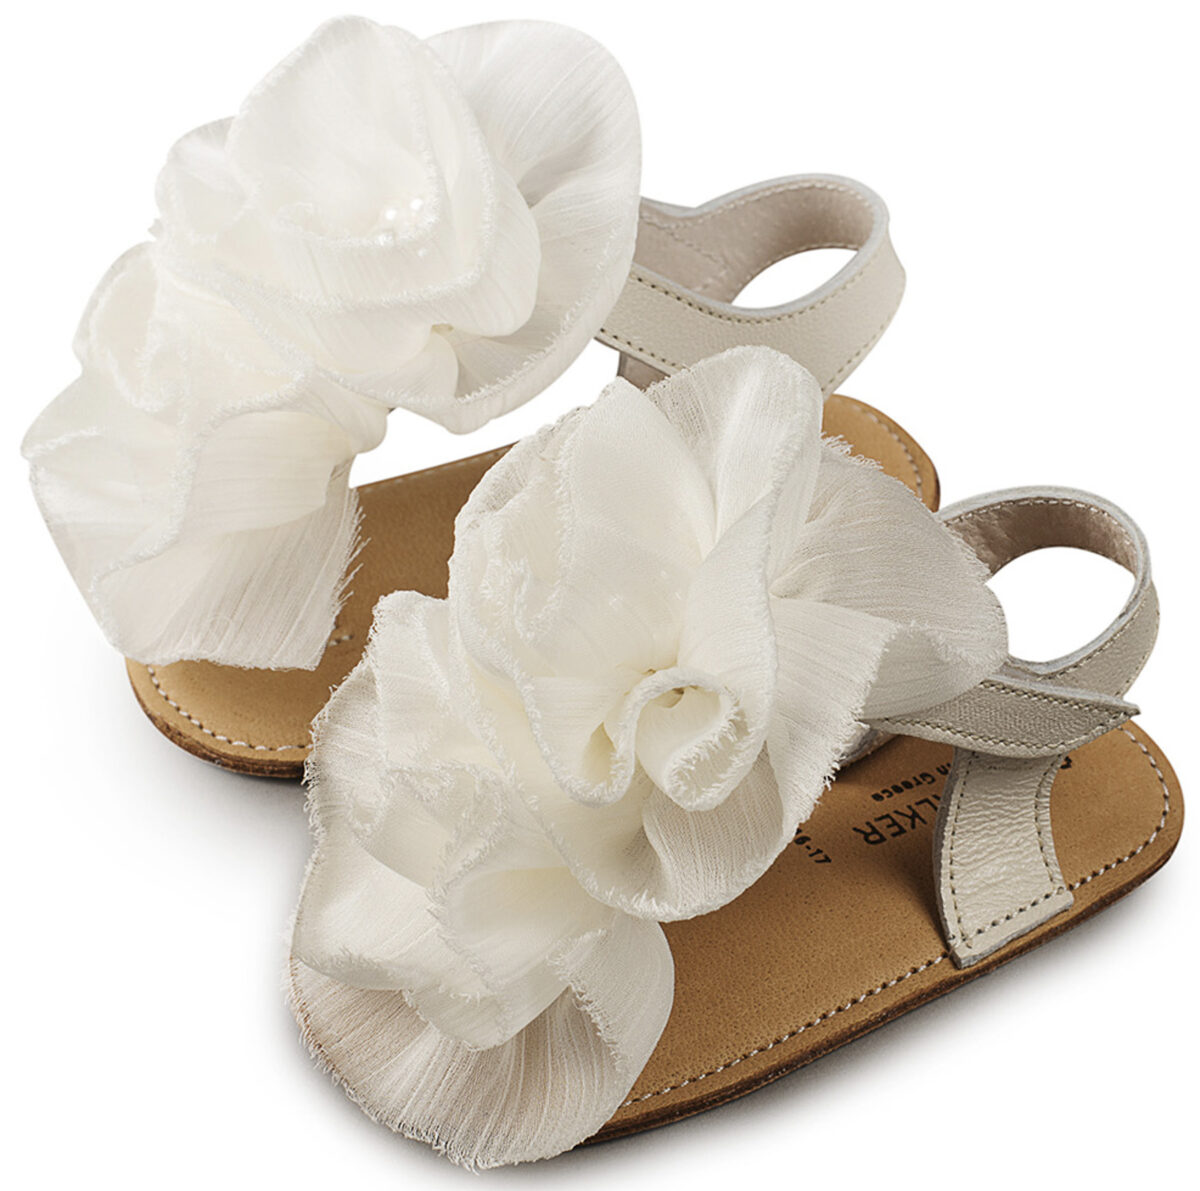 Παπούτσια Αγκαλίας Δερμάτινα Πέδιλα με Λουλούδια Εκρου MI1559